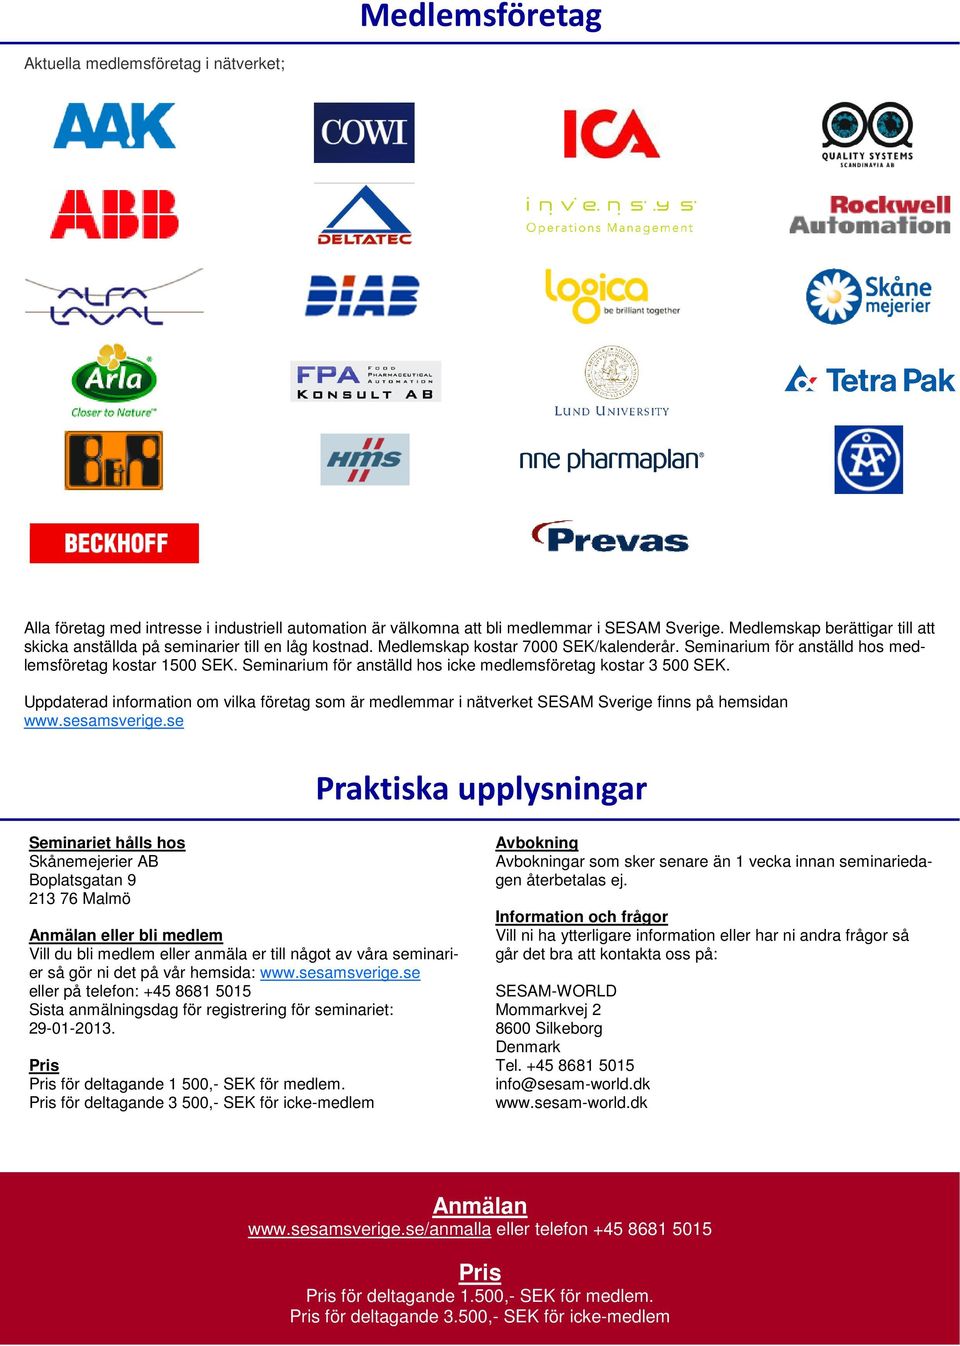 Seminarium för anställd hos icke medlemsföretag kostar 3 500 SEK. Uppdaterad information om vilka företag som är medlemmar i nätverket SESAM Sverige finns på hemsidan www.sesamsverige.